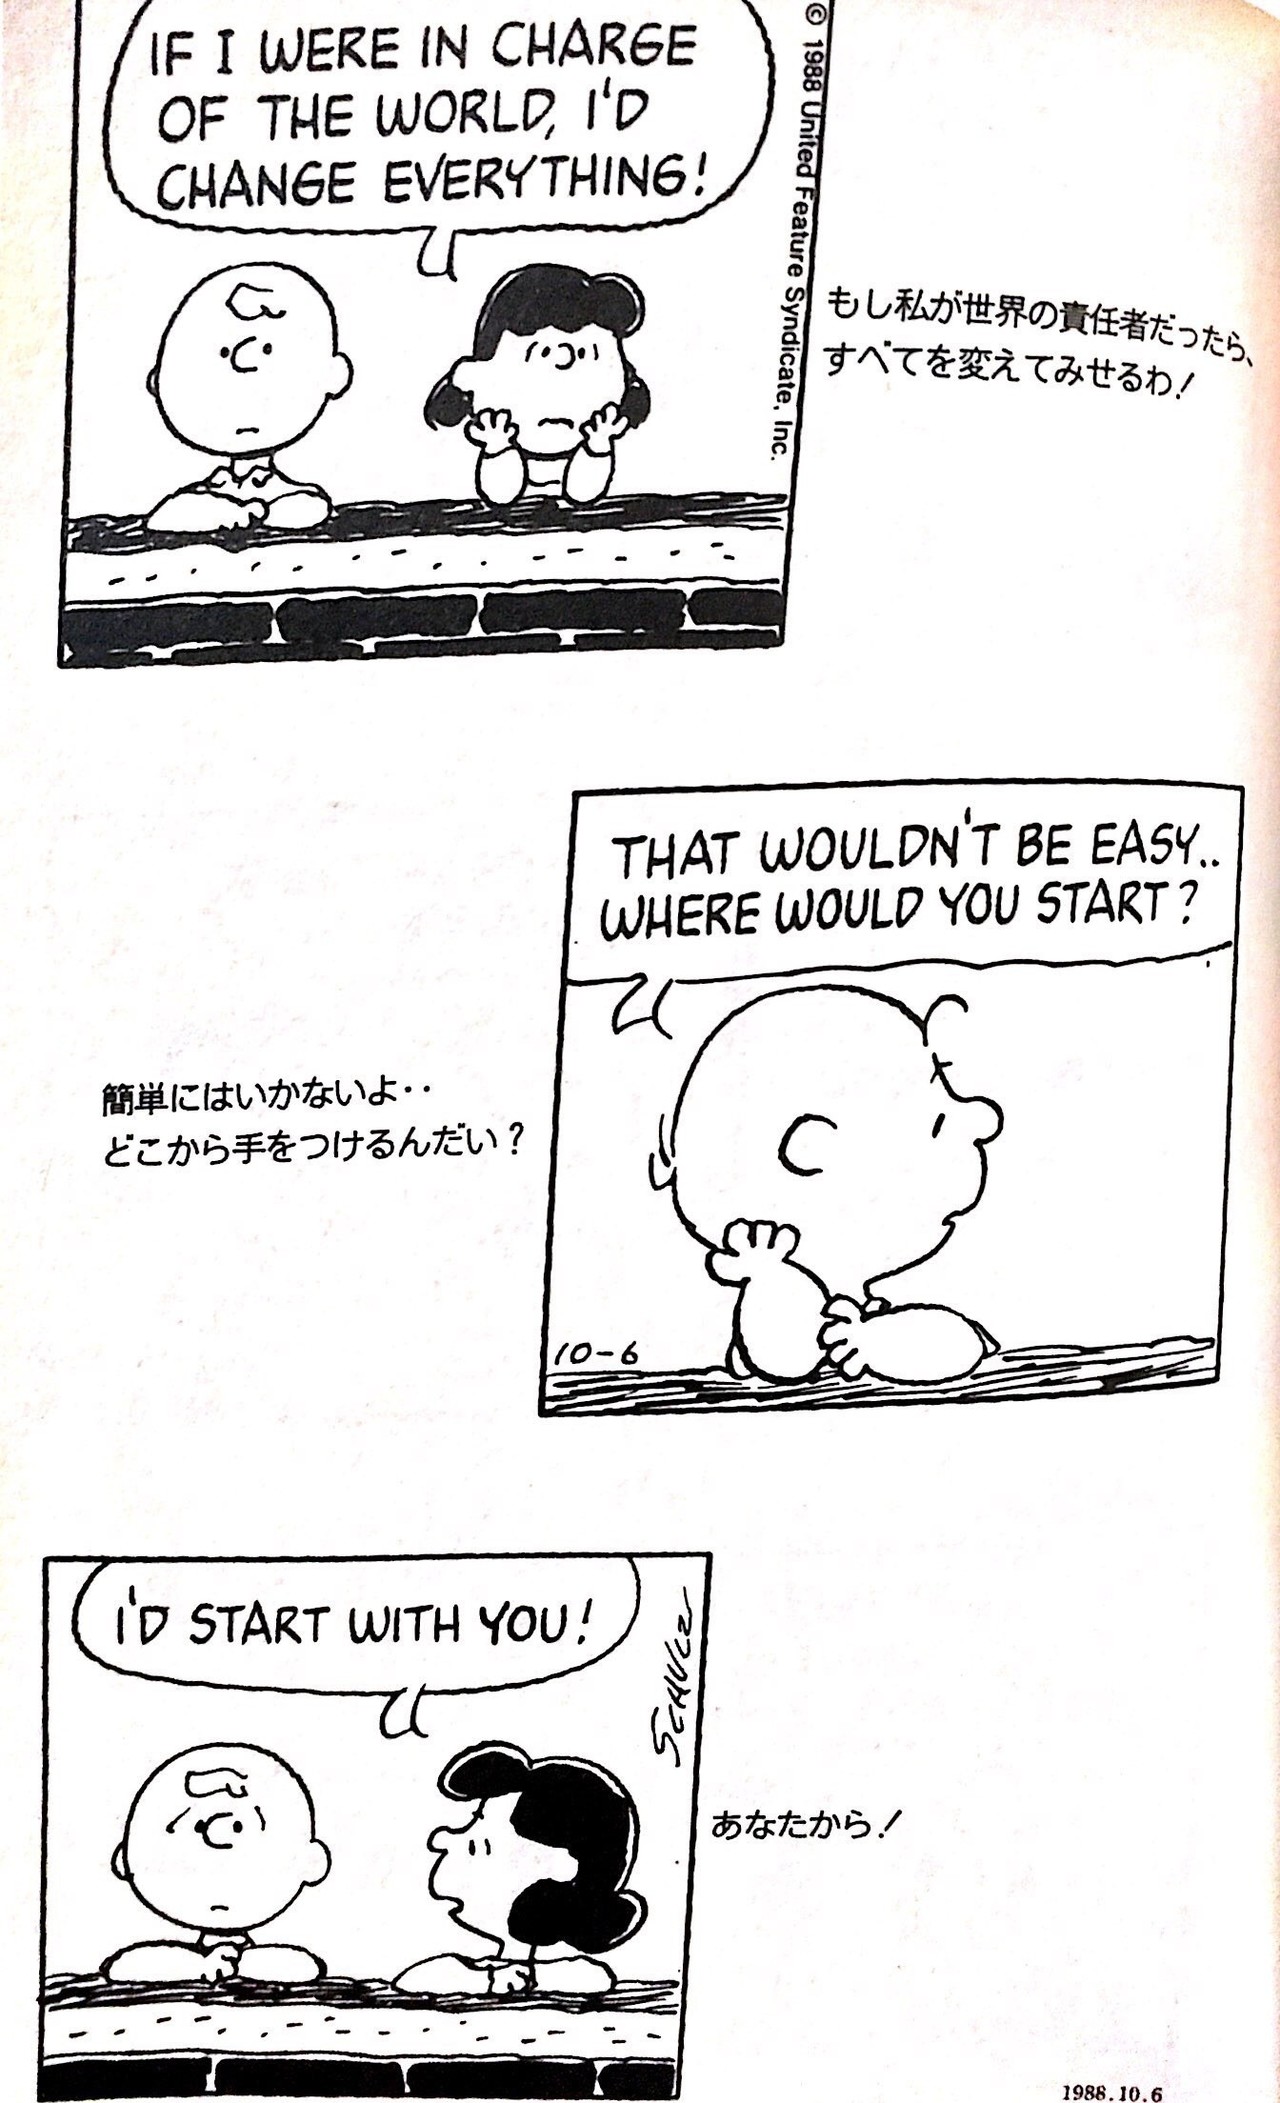 スヌーピーがもっと好きになる Peanuts のひみつ Tatsuki Note